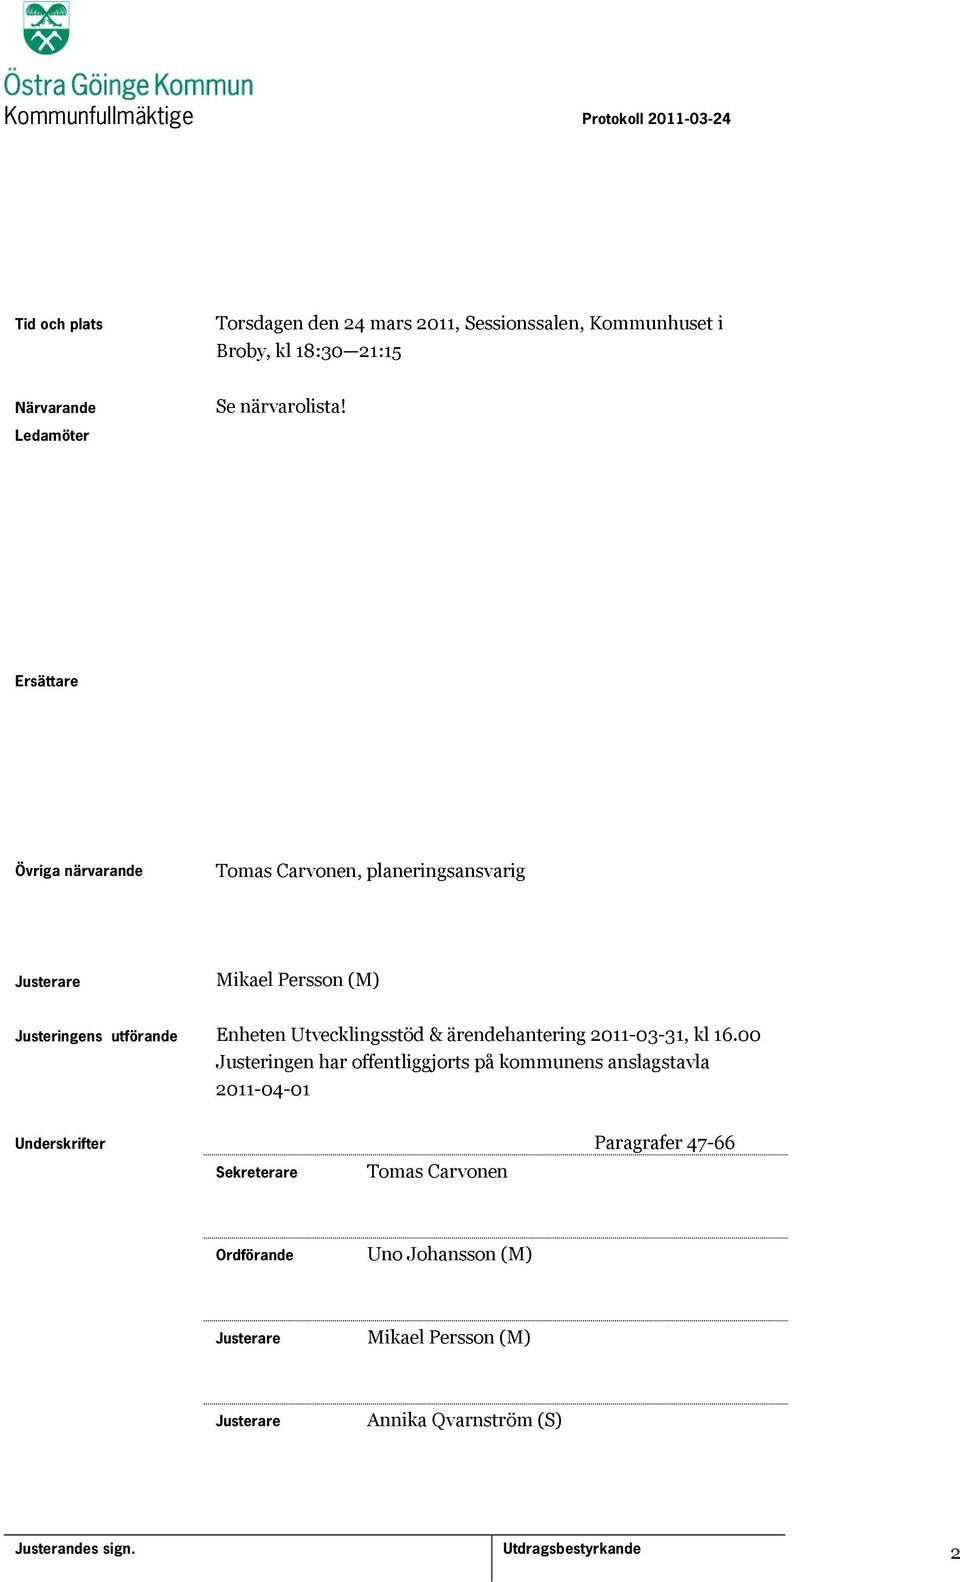 Utvecklingsstöd & ärendehantering 2011-03-31, kl 16.